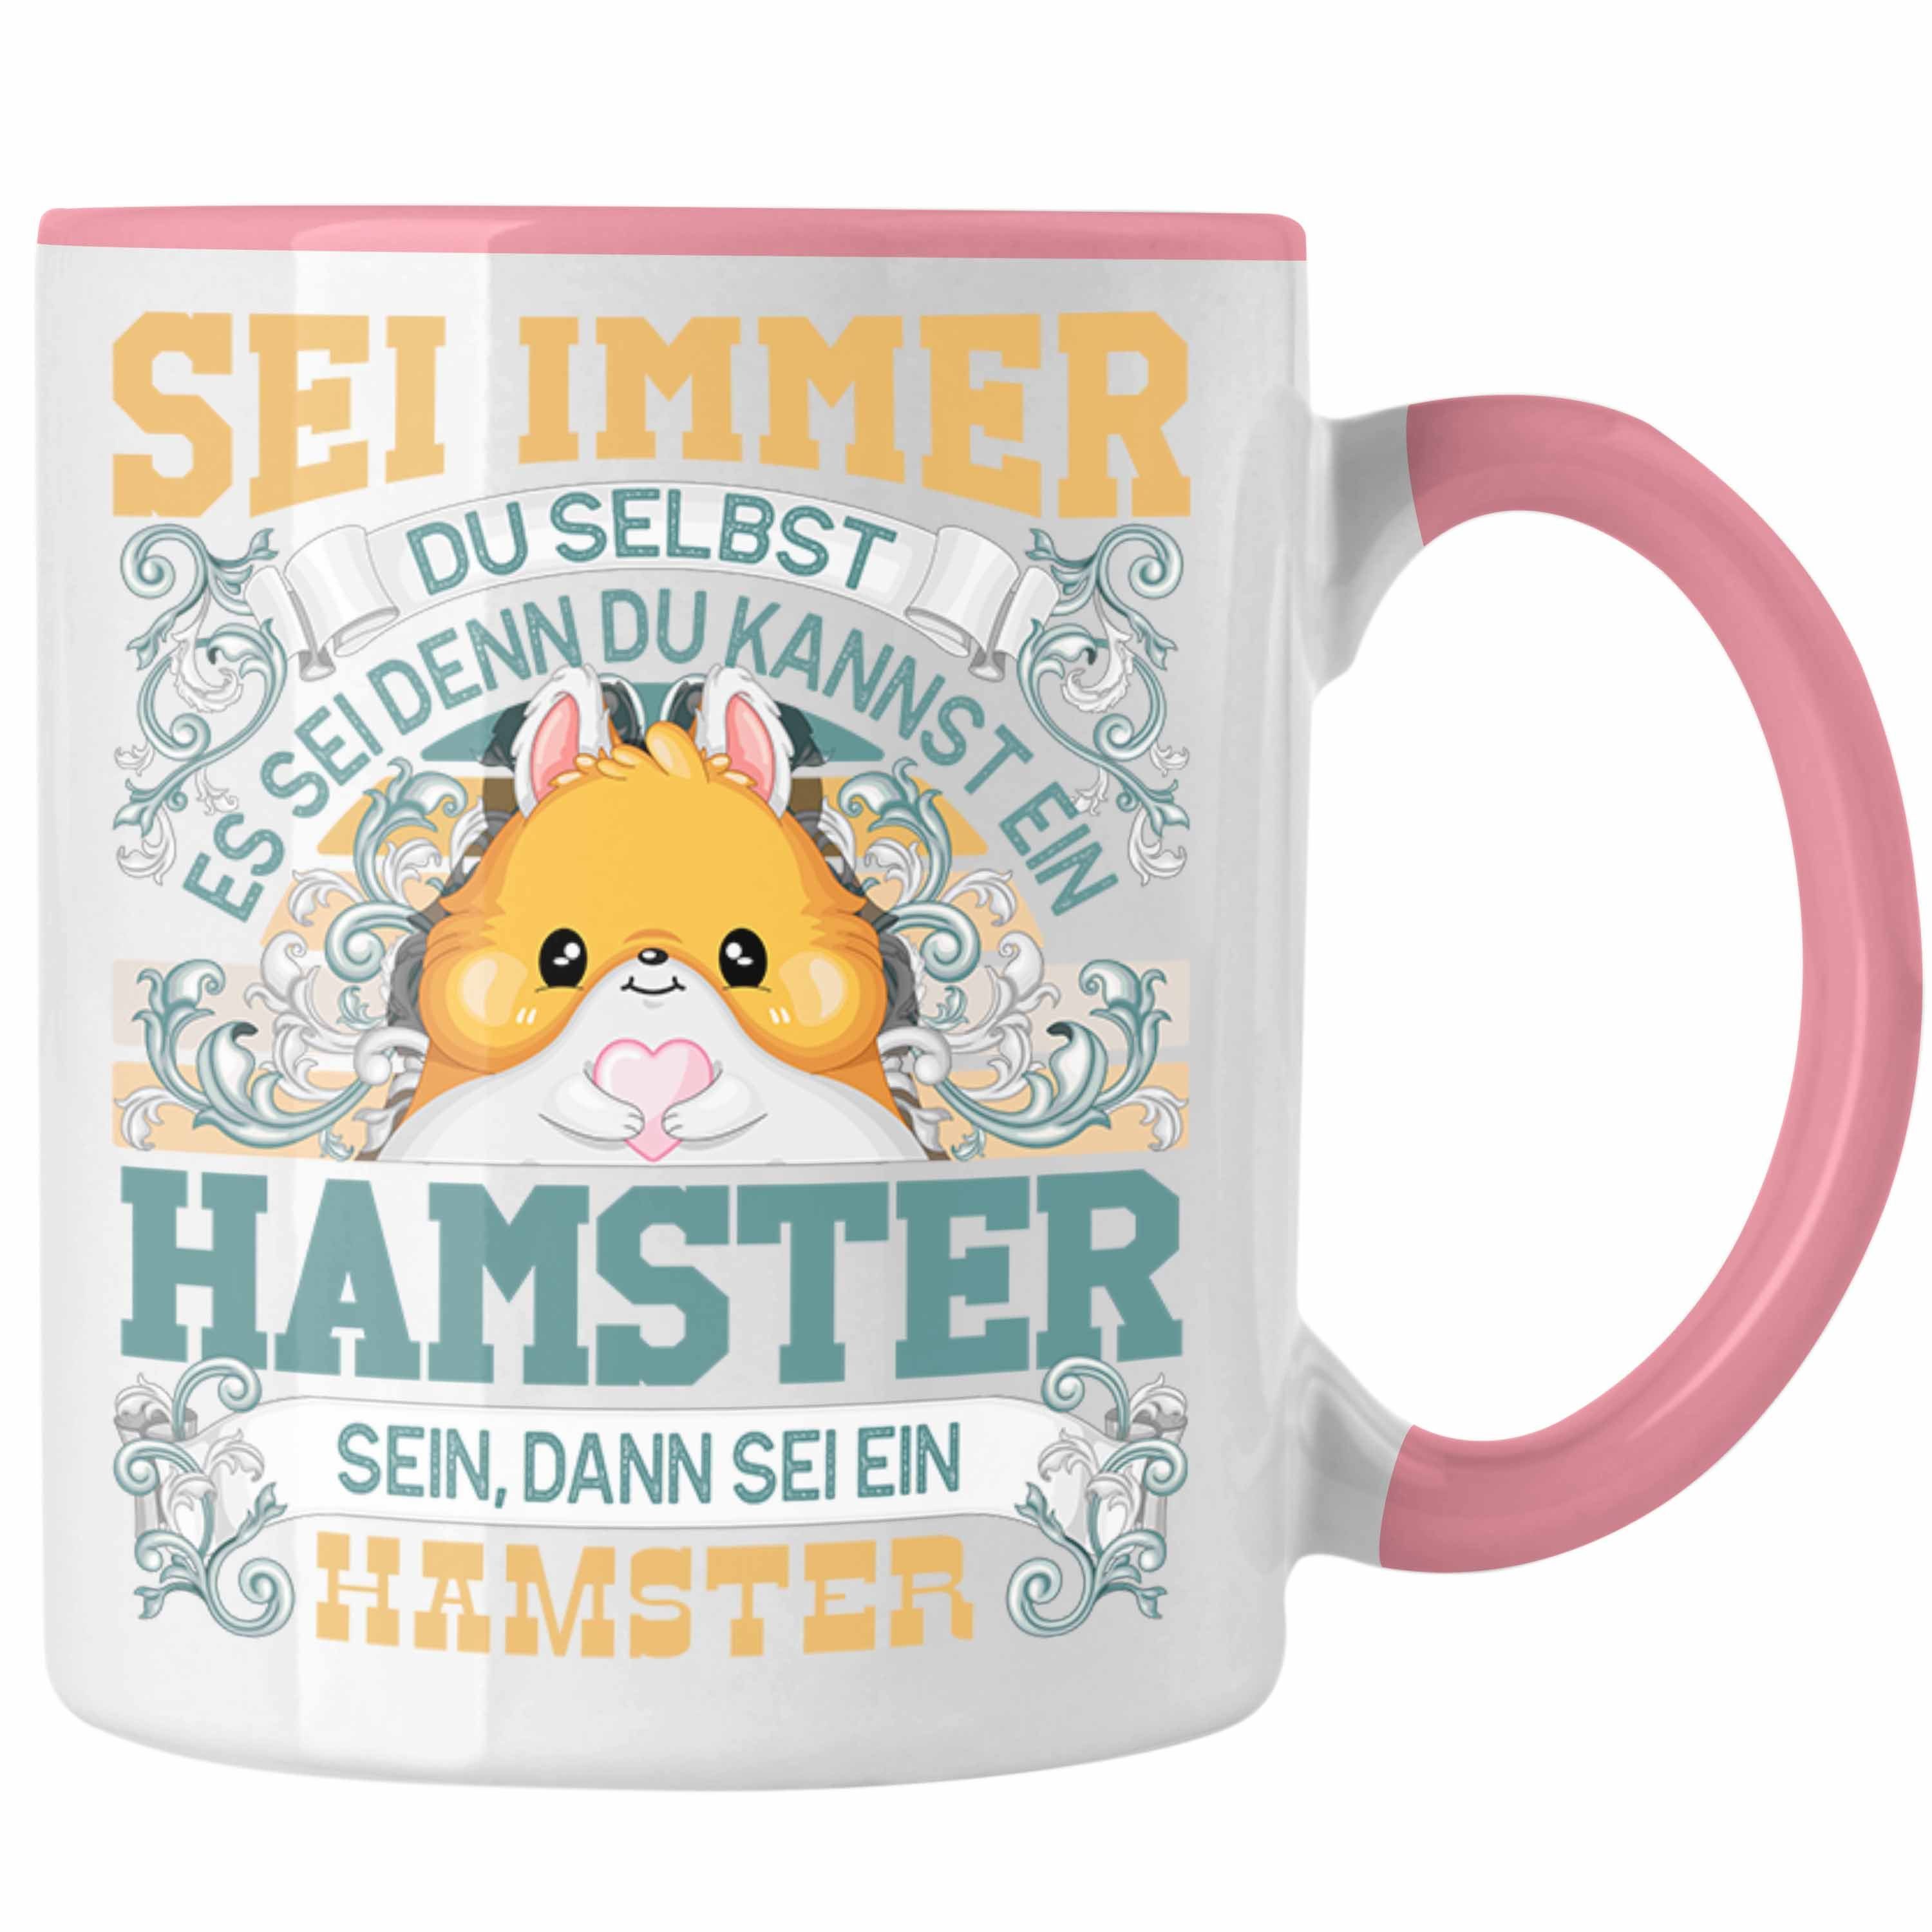 Trendation Tasse Hamster Tasse Geschenk Hamster Liebhaber Sei immer Du Selbst Spruch Rosa